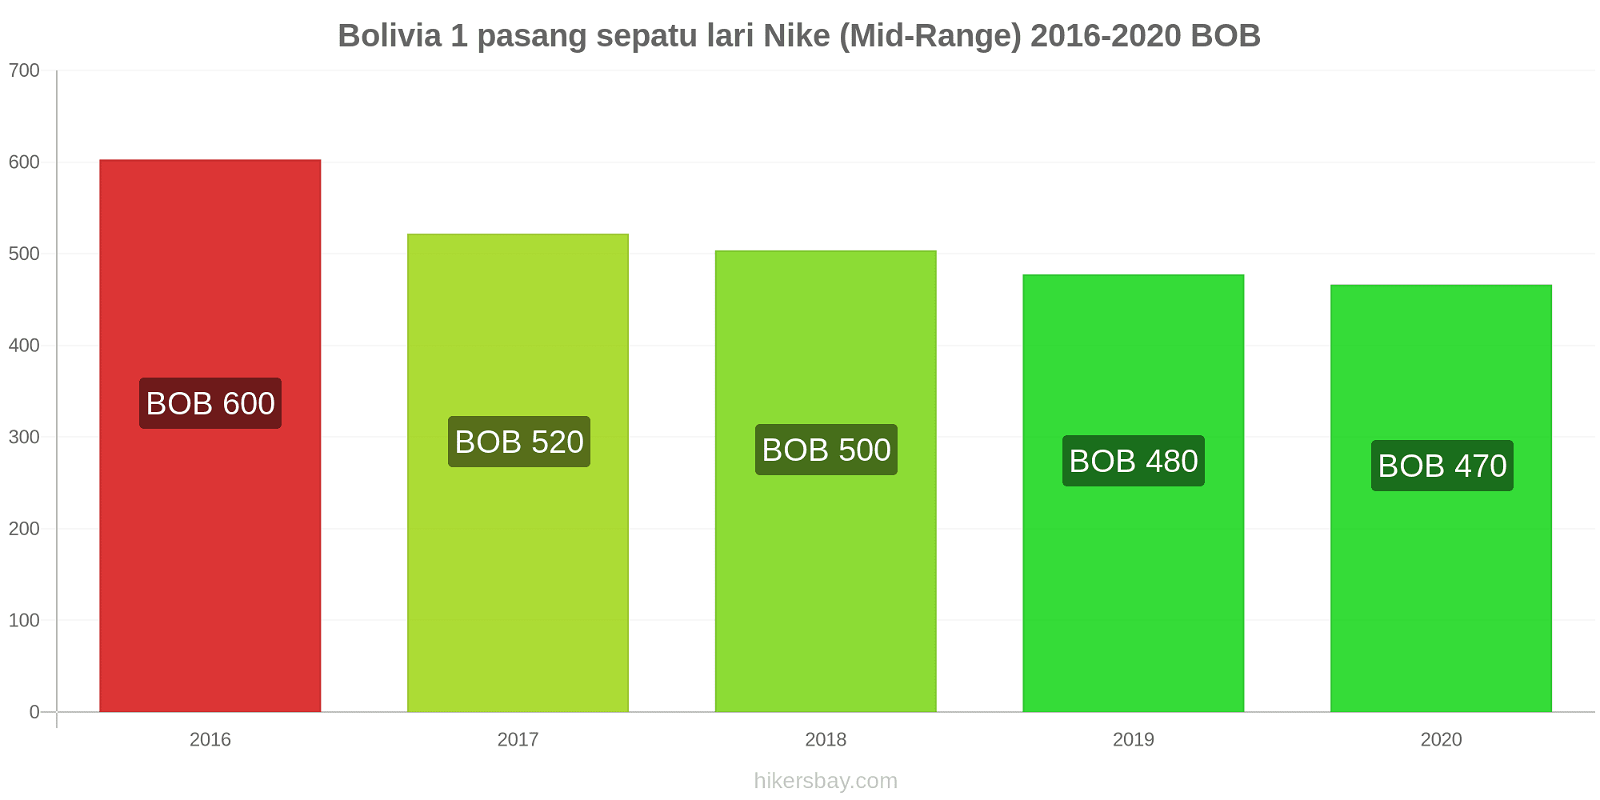 Bolivia perubahan harga 1 pasang sepatu lari Nike (Mid-Range) hikersbay.com